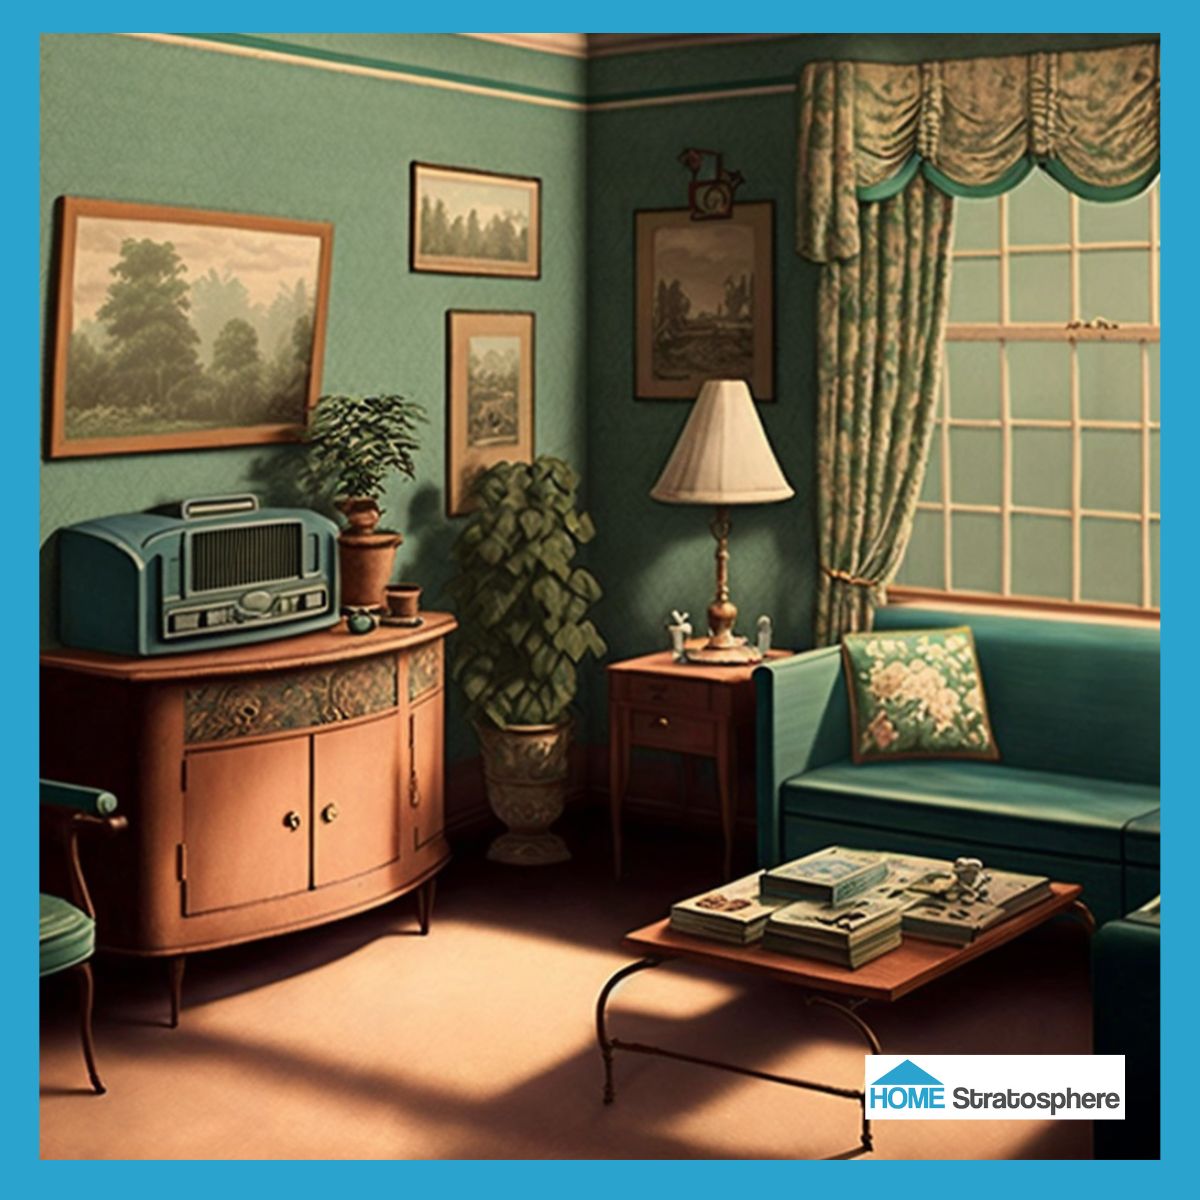 20世纪50年代的家庭喜欢看电视，但他们也喜欢听他们最喜欢的广播节目。你可以在这个客厅里重新体验那种感觉，客厅里有一个令人难以置信的收音机。蓝绿色的沙发看起来很时尚，但花朵抱枕和窗户装饰让它变得柔和起来。多亏了墙上的风景艺术品，这个房间真的有家的感觉!